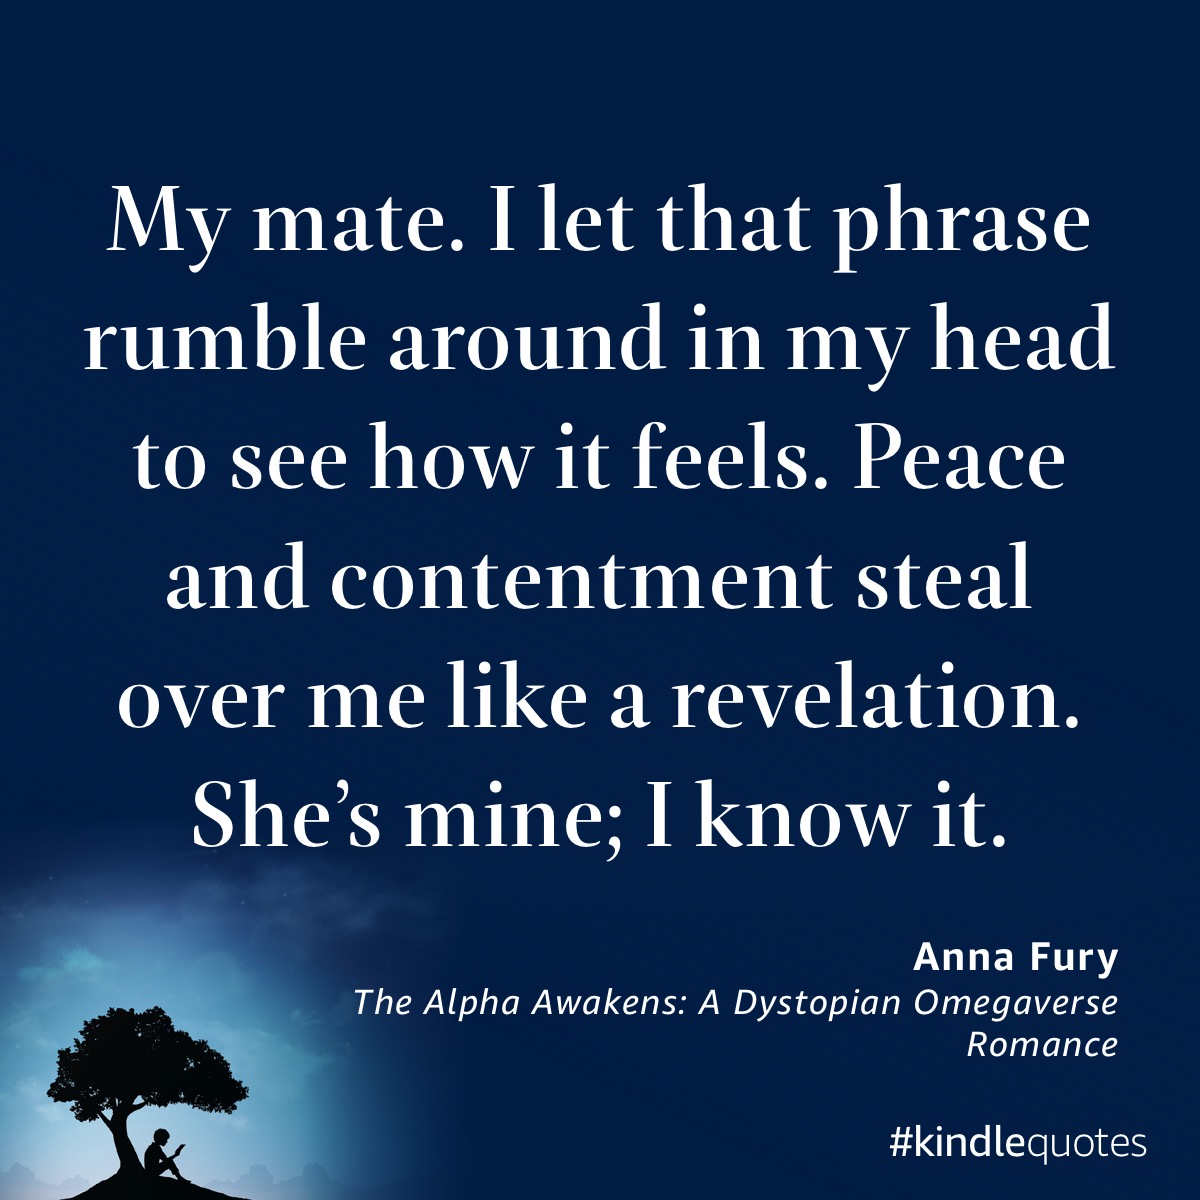 Book quote Anna Fury